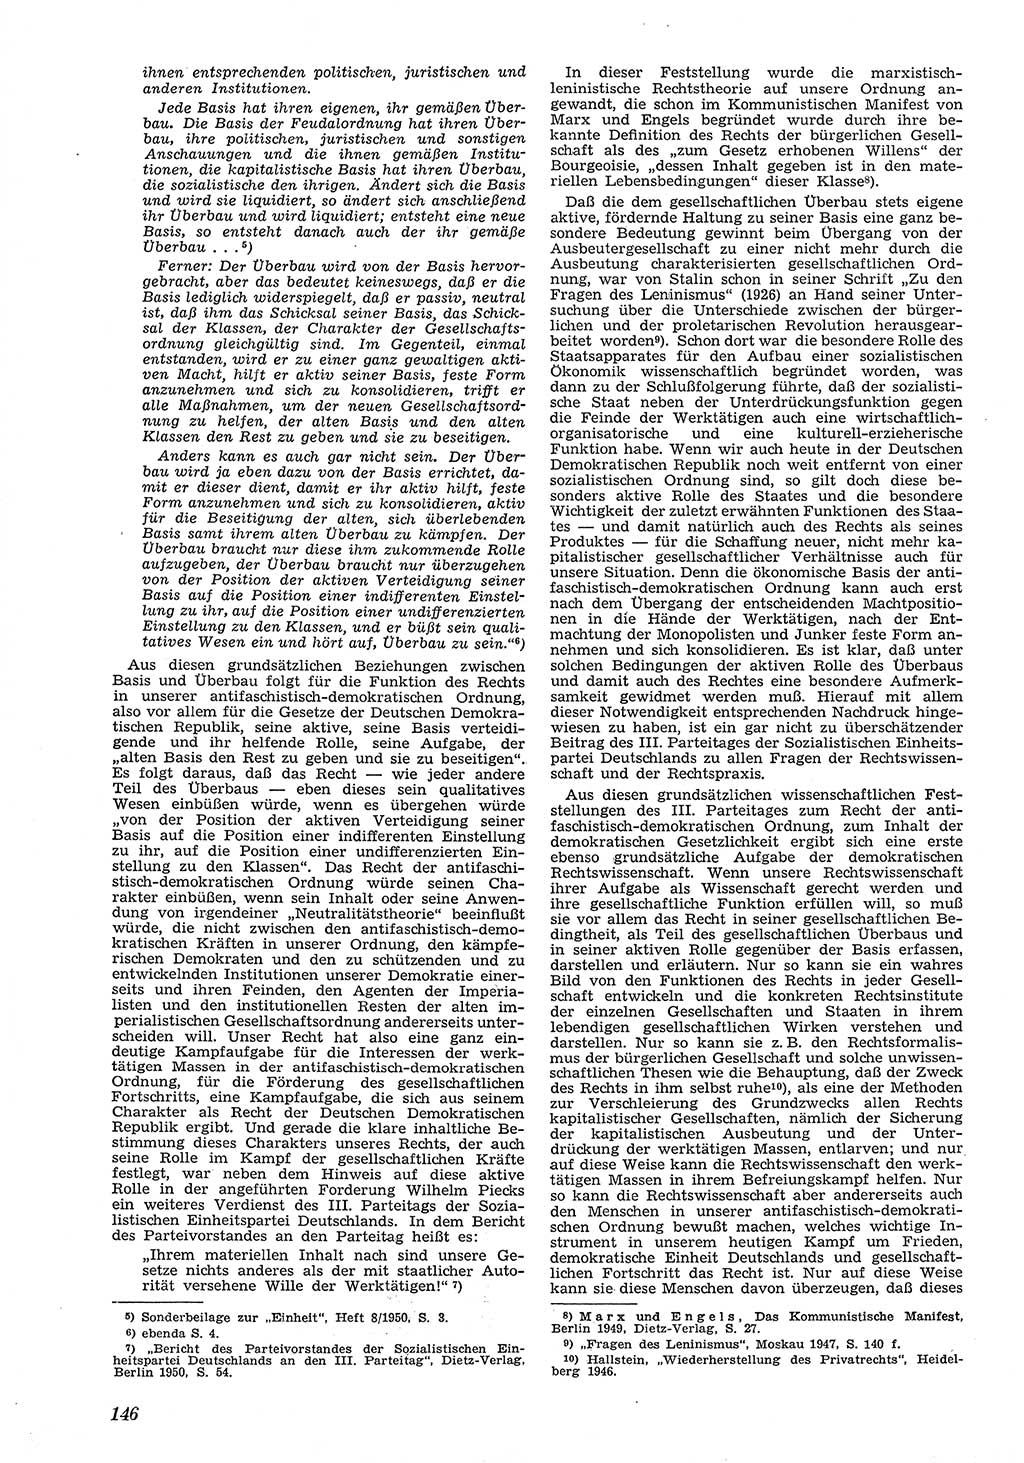 Neue Justiz (NJ), Zeitschrift für Recht und Rechtswissenschaft [Deutsche Demokratische Republik (DDR)], 5. Jahrgang 1951, Seite 146 (NJ DDR 1951, S. 146)